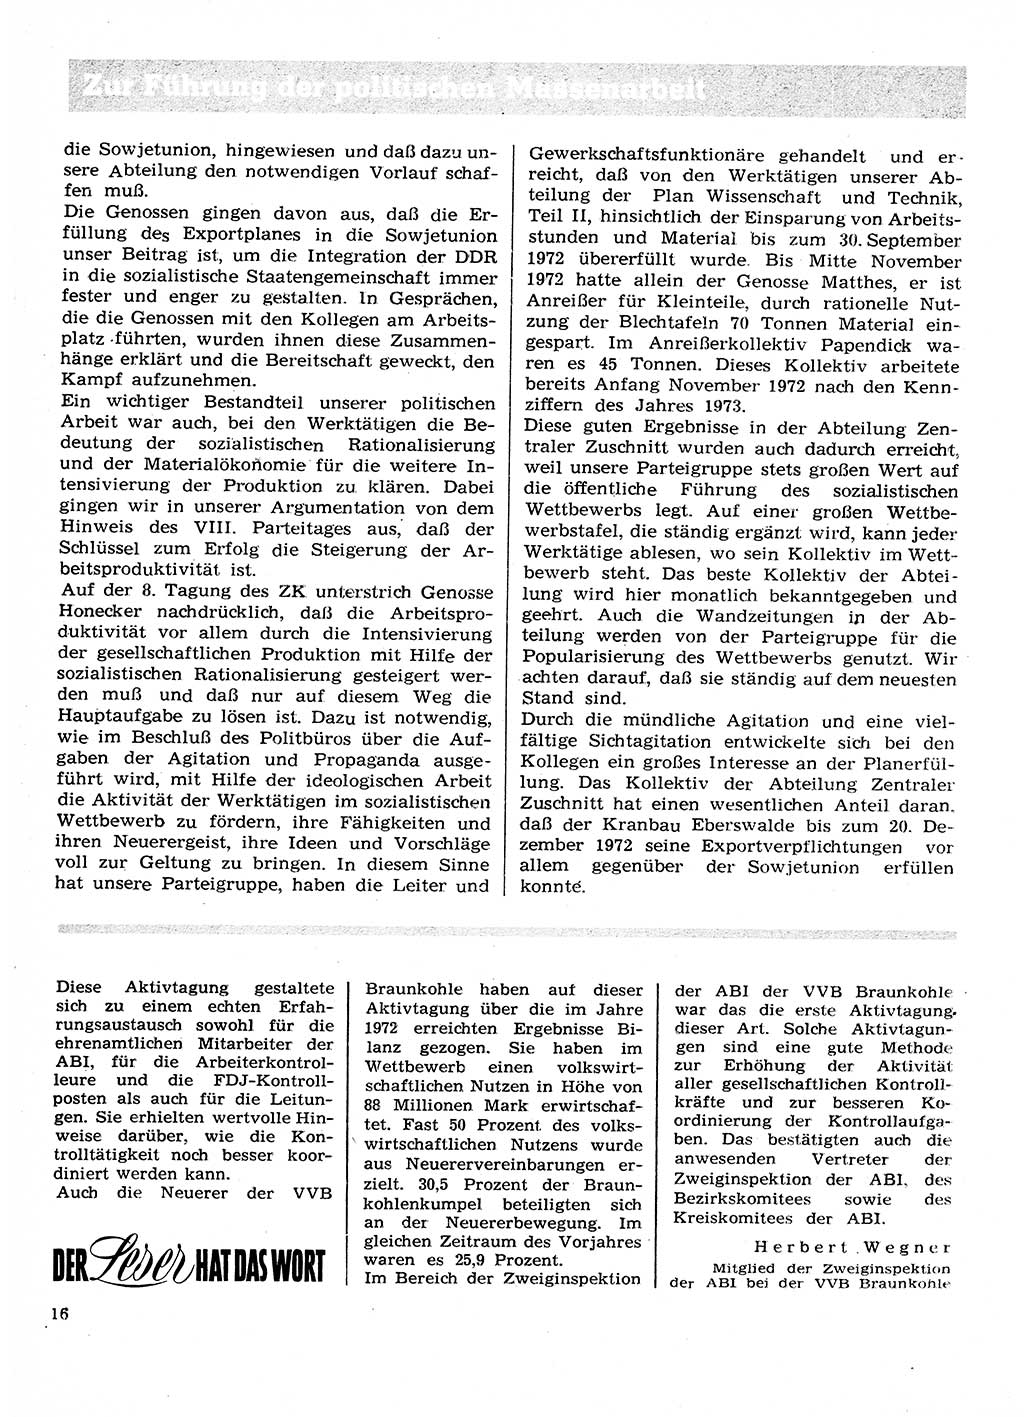 Neuer Weg (NW), Organ des Zentralkomitees (ZK) der SED (Sozialistische Einheitspartei Deutschlands) für Fragen des Parteilebens, 28. Jahrgang [Deutsche Demokratische Republik (DDR)] 1973, Seite 16 (NW ZK SED DDR 1973, S. 16)